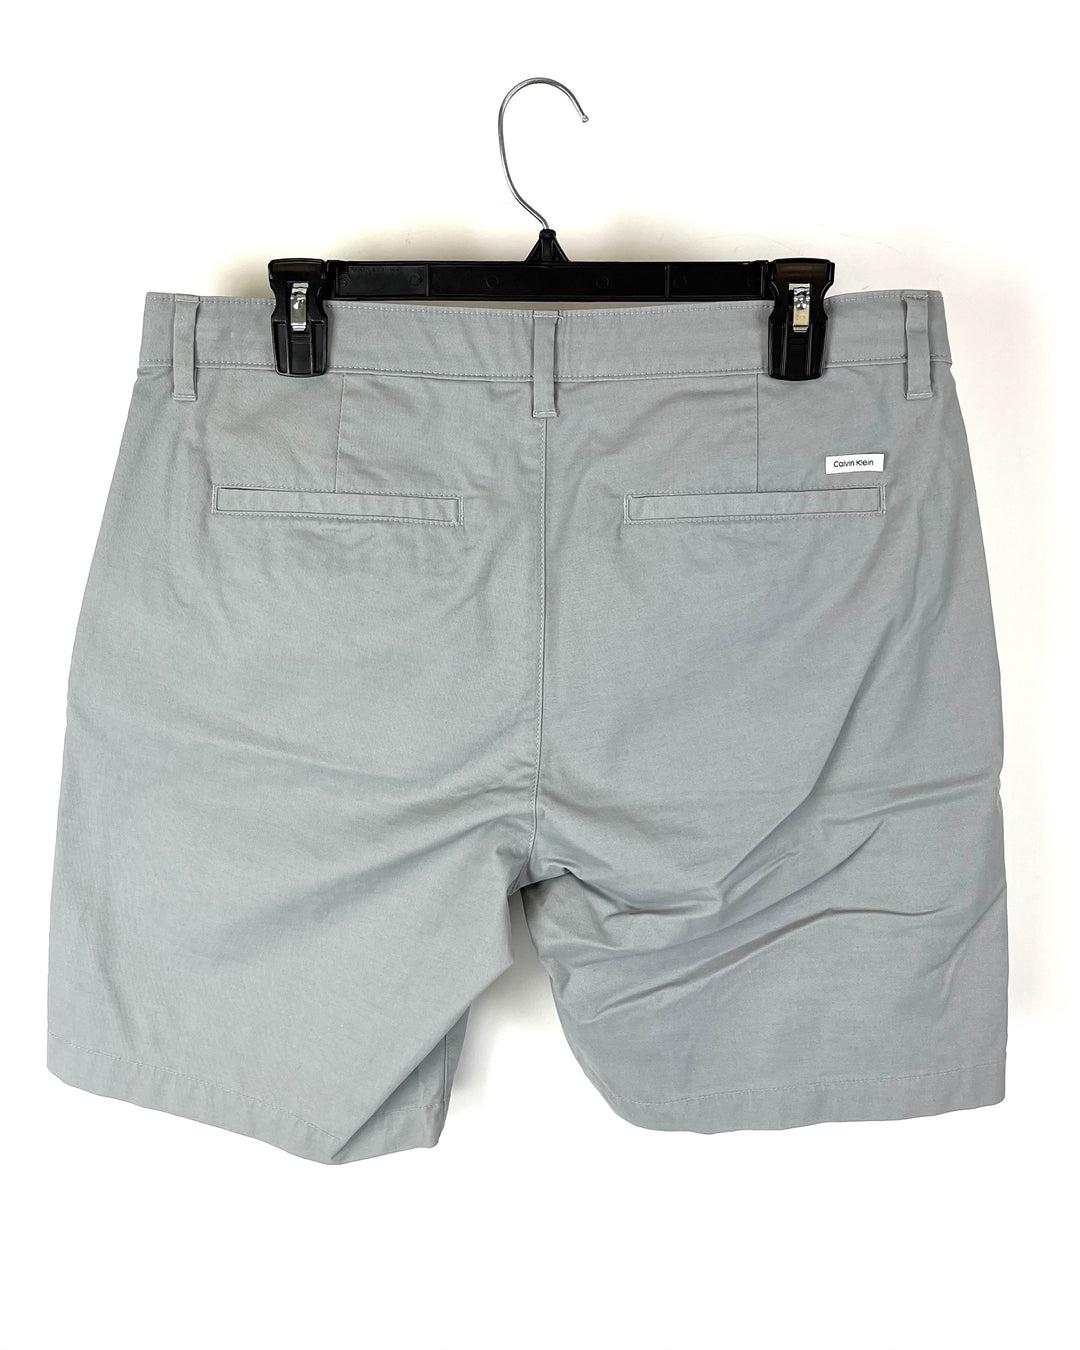 MENS Gray Chino Shorts - Extra Large